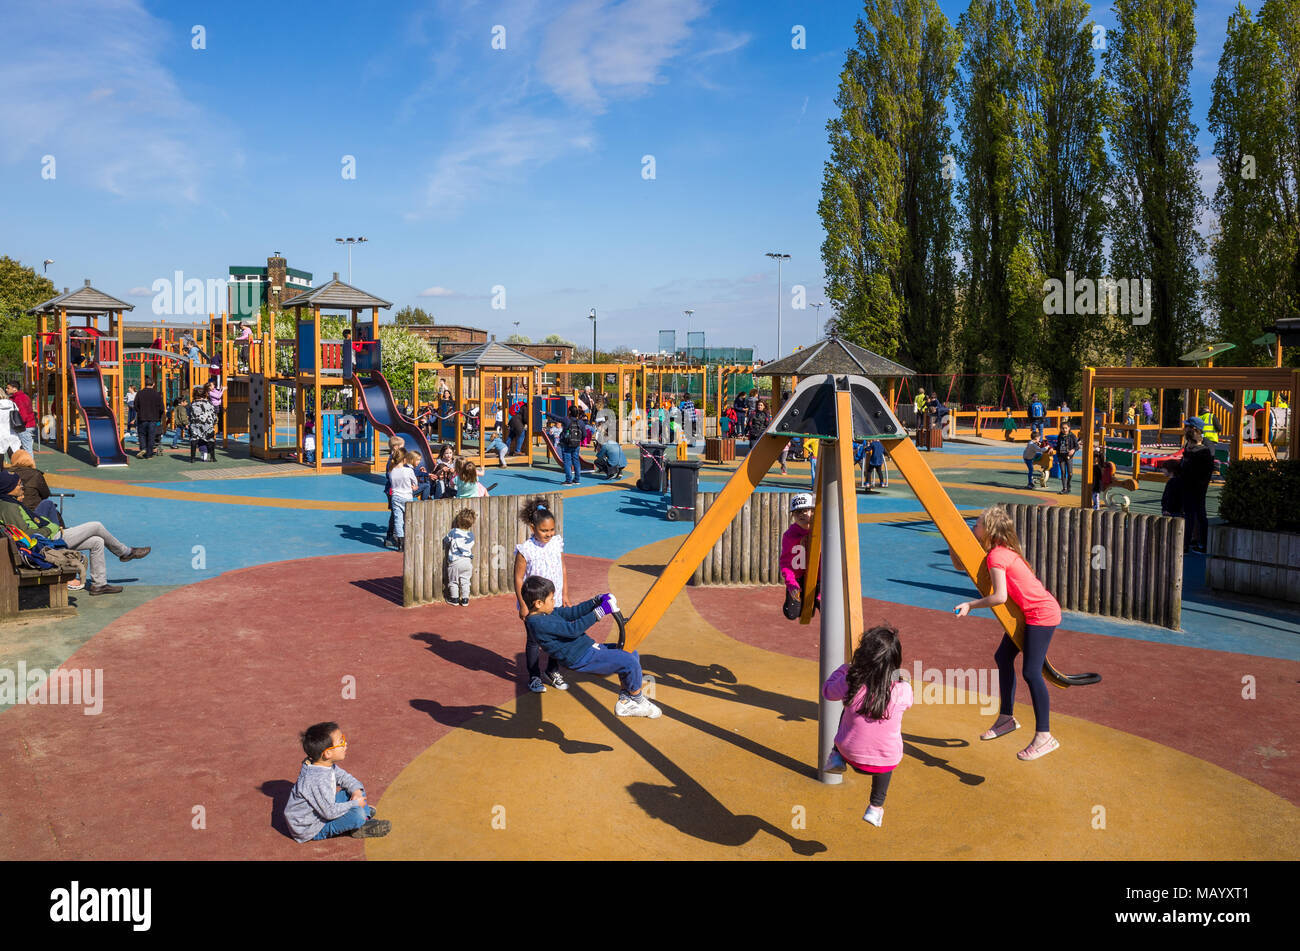 Children's playground on Hampstead Heath, UK, London Stock Photo